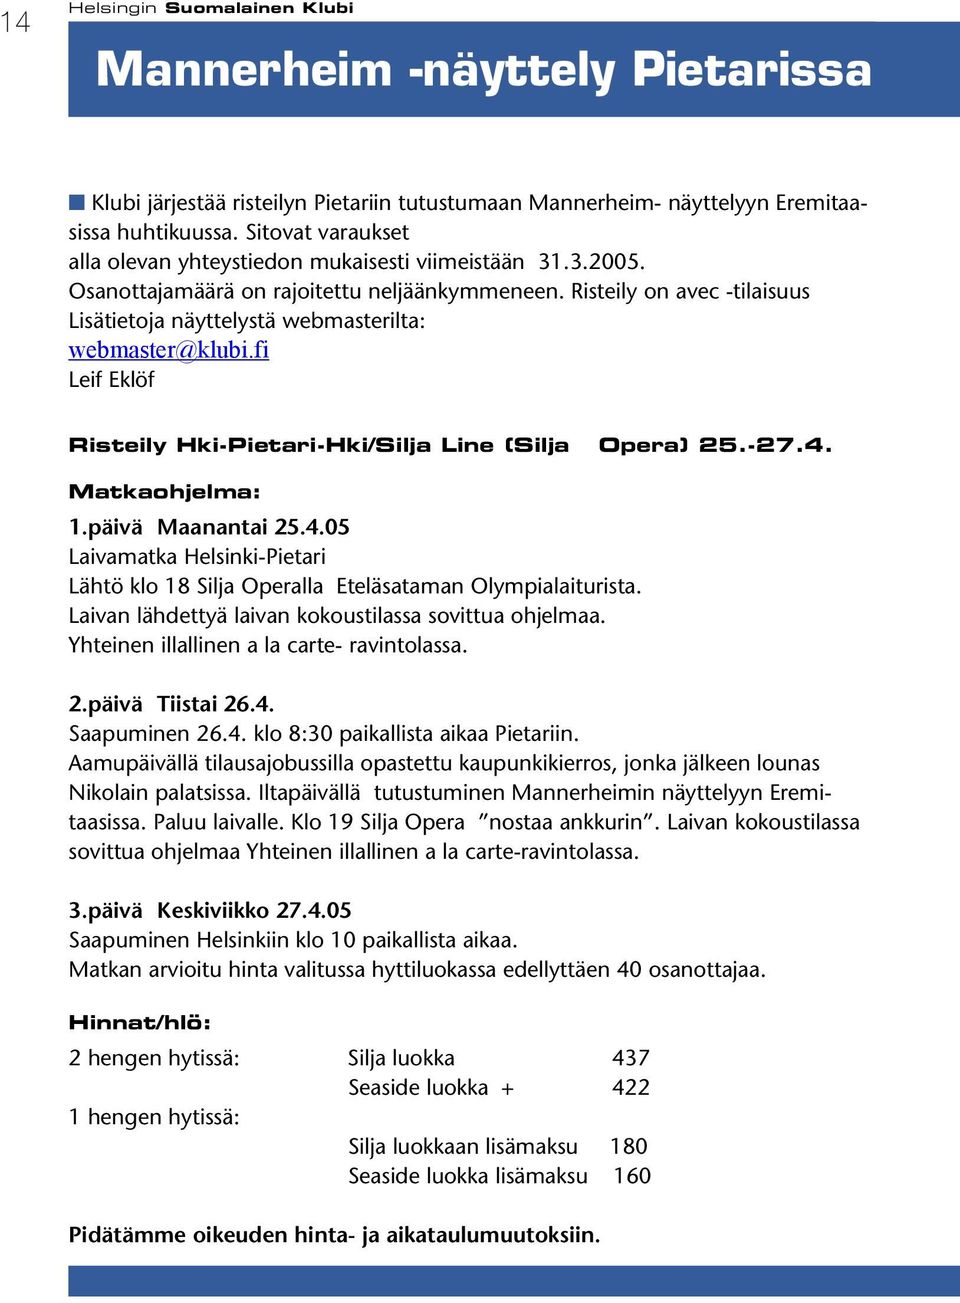 Risteily on avec -tilaisuus Lisätietoja näyttelystä webmasterilta: webmaster@klubi.fi Leif Eklöf Risteily Hki-Pietari-Hki/Silja Line (Silja Opera) 25.-27.4.